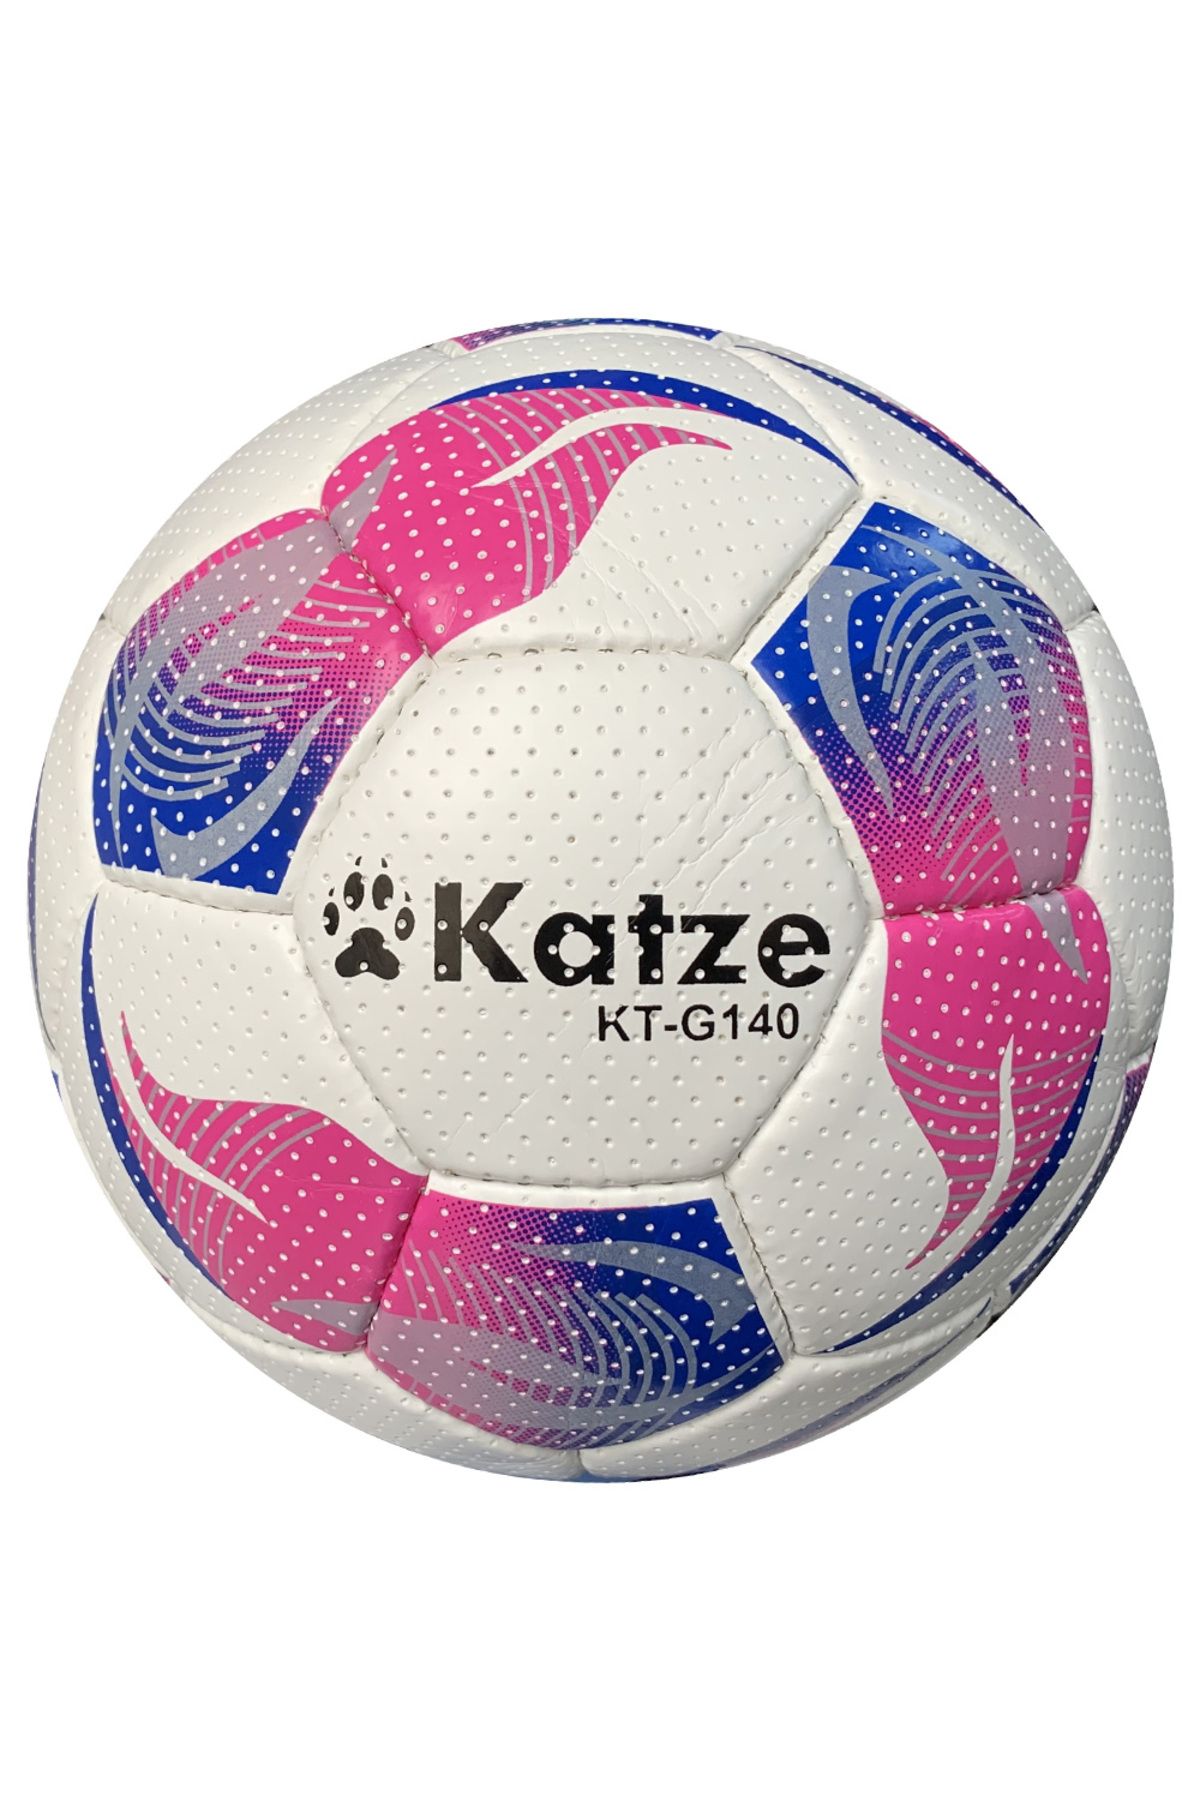 Katze KT-G140 Futbol Topu 5 Numara Pembe